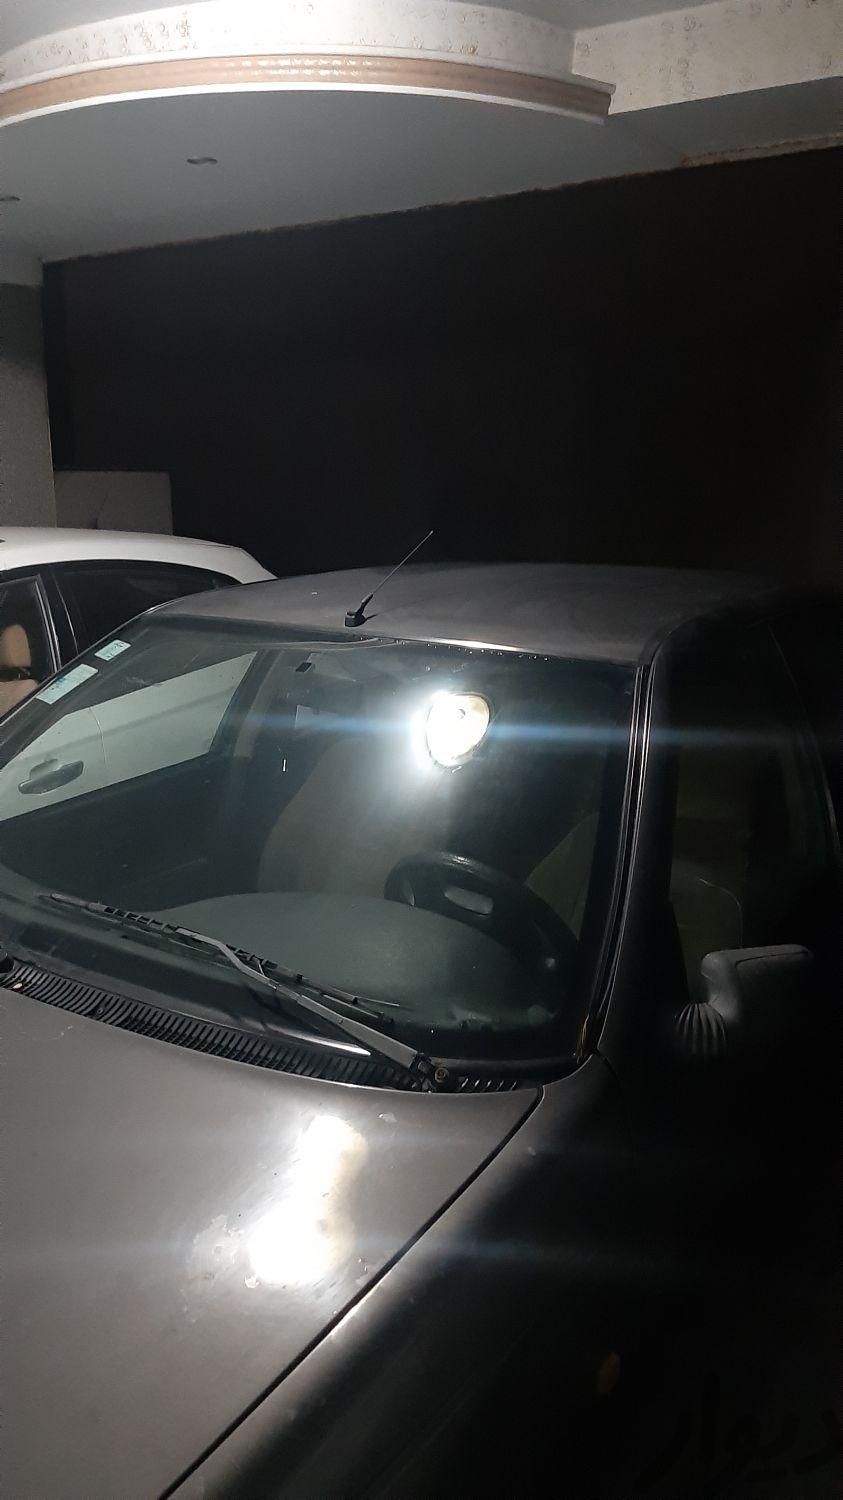 پژو روآ دوگانه سوز، مدل ۱۳۸۸|سواری و وانت|تهران, تهران‌سر|دیوار